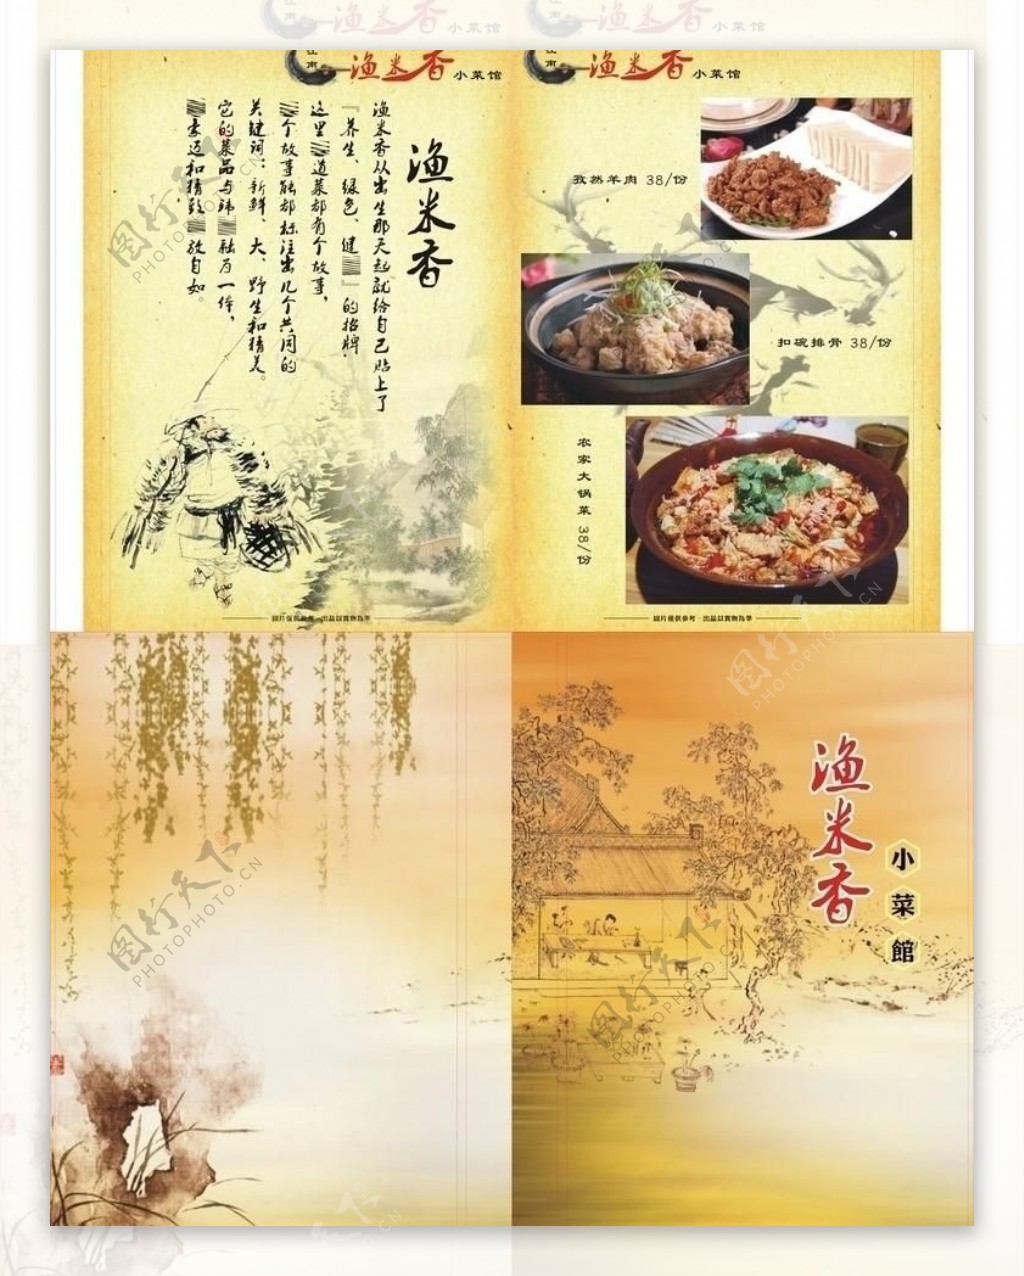 渔米香小菜馆图片